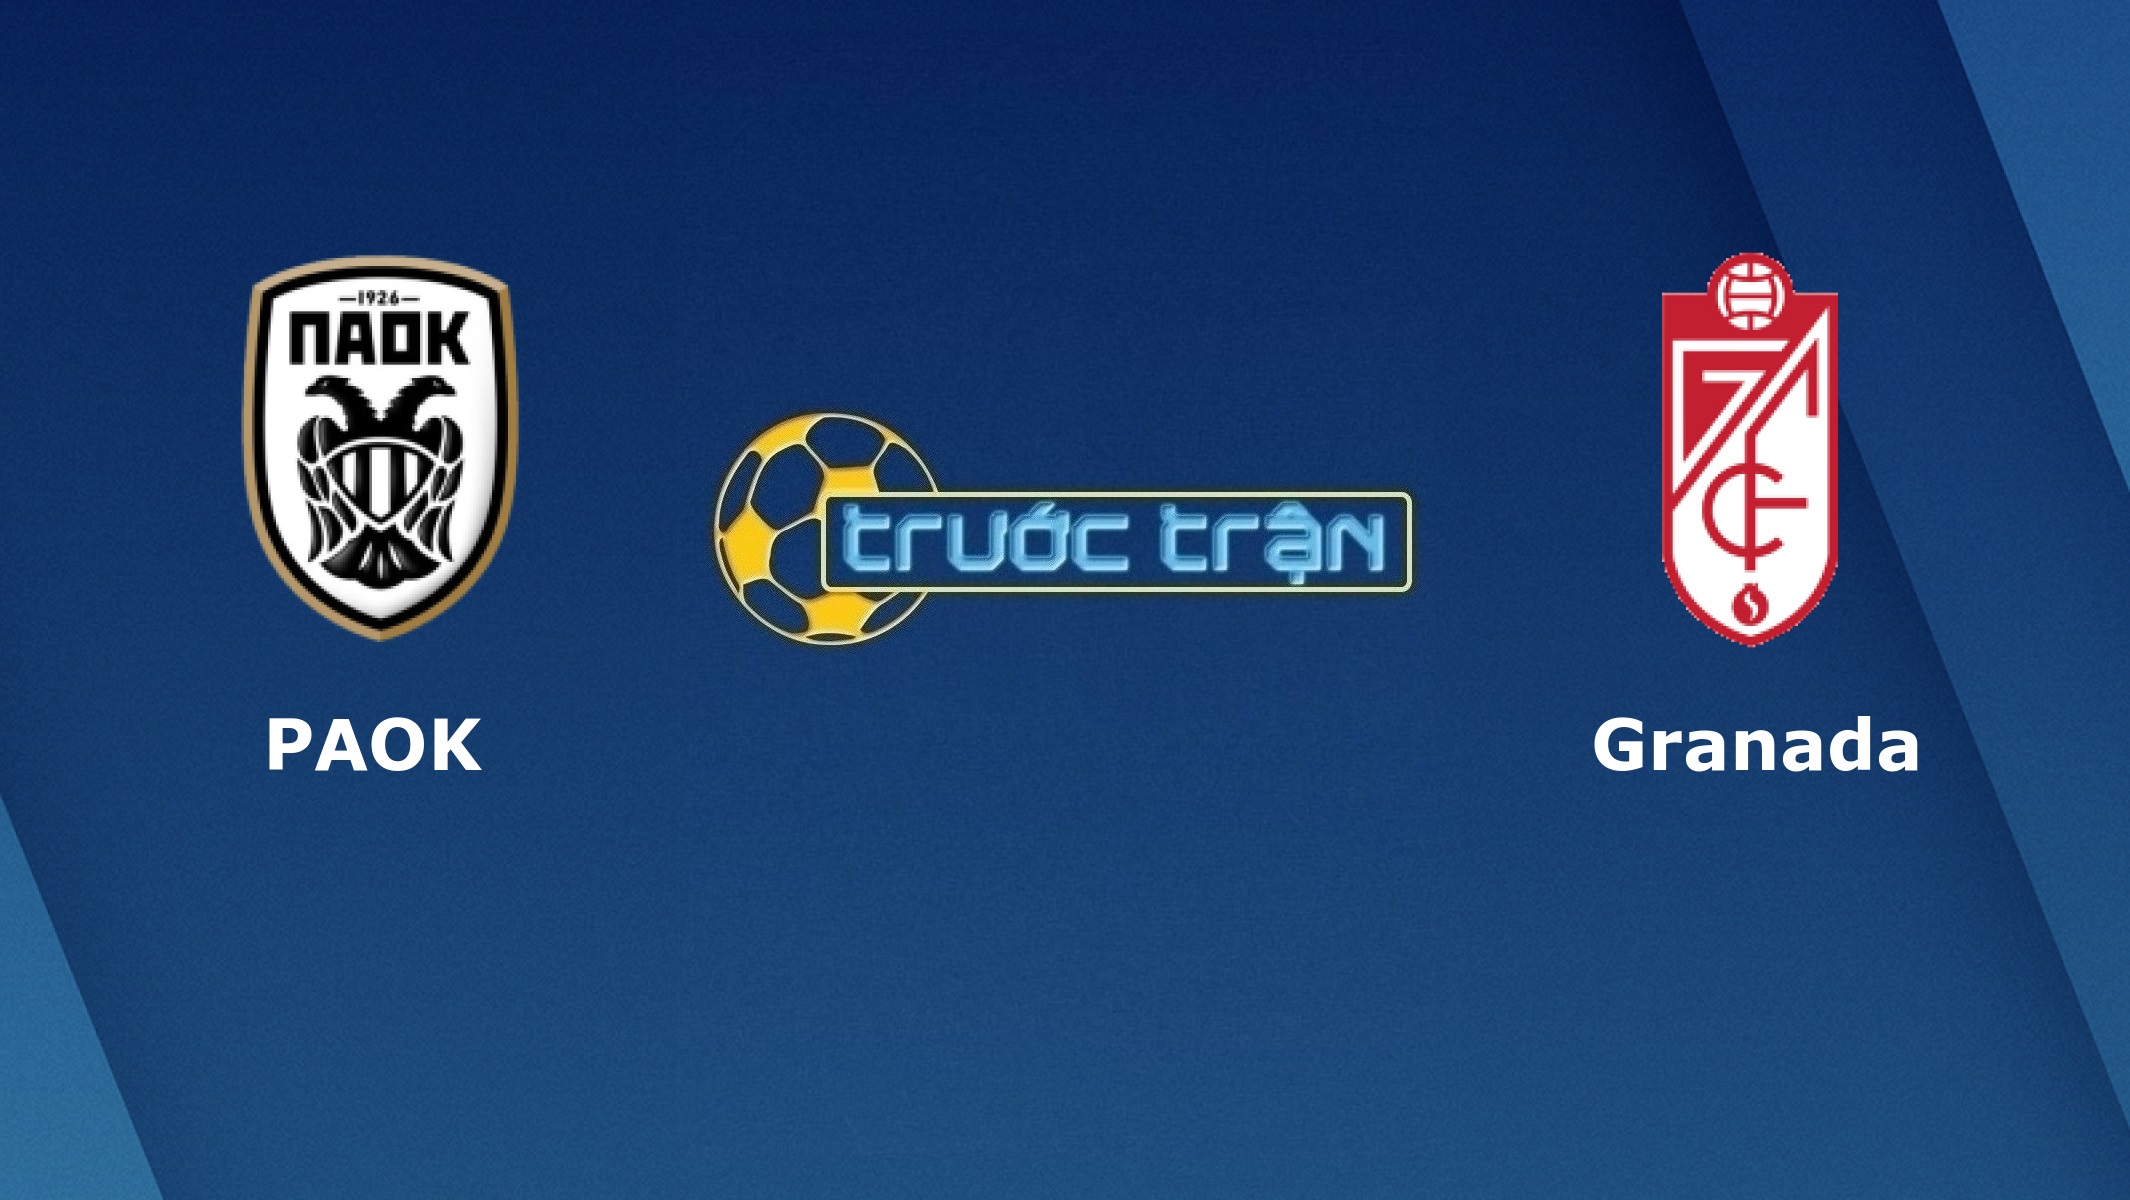 PAOK Saloniki vs Granada CF – Tip kèo bóng đá hôm nay – 00h55 11/12/2020